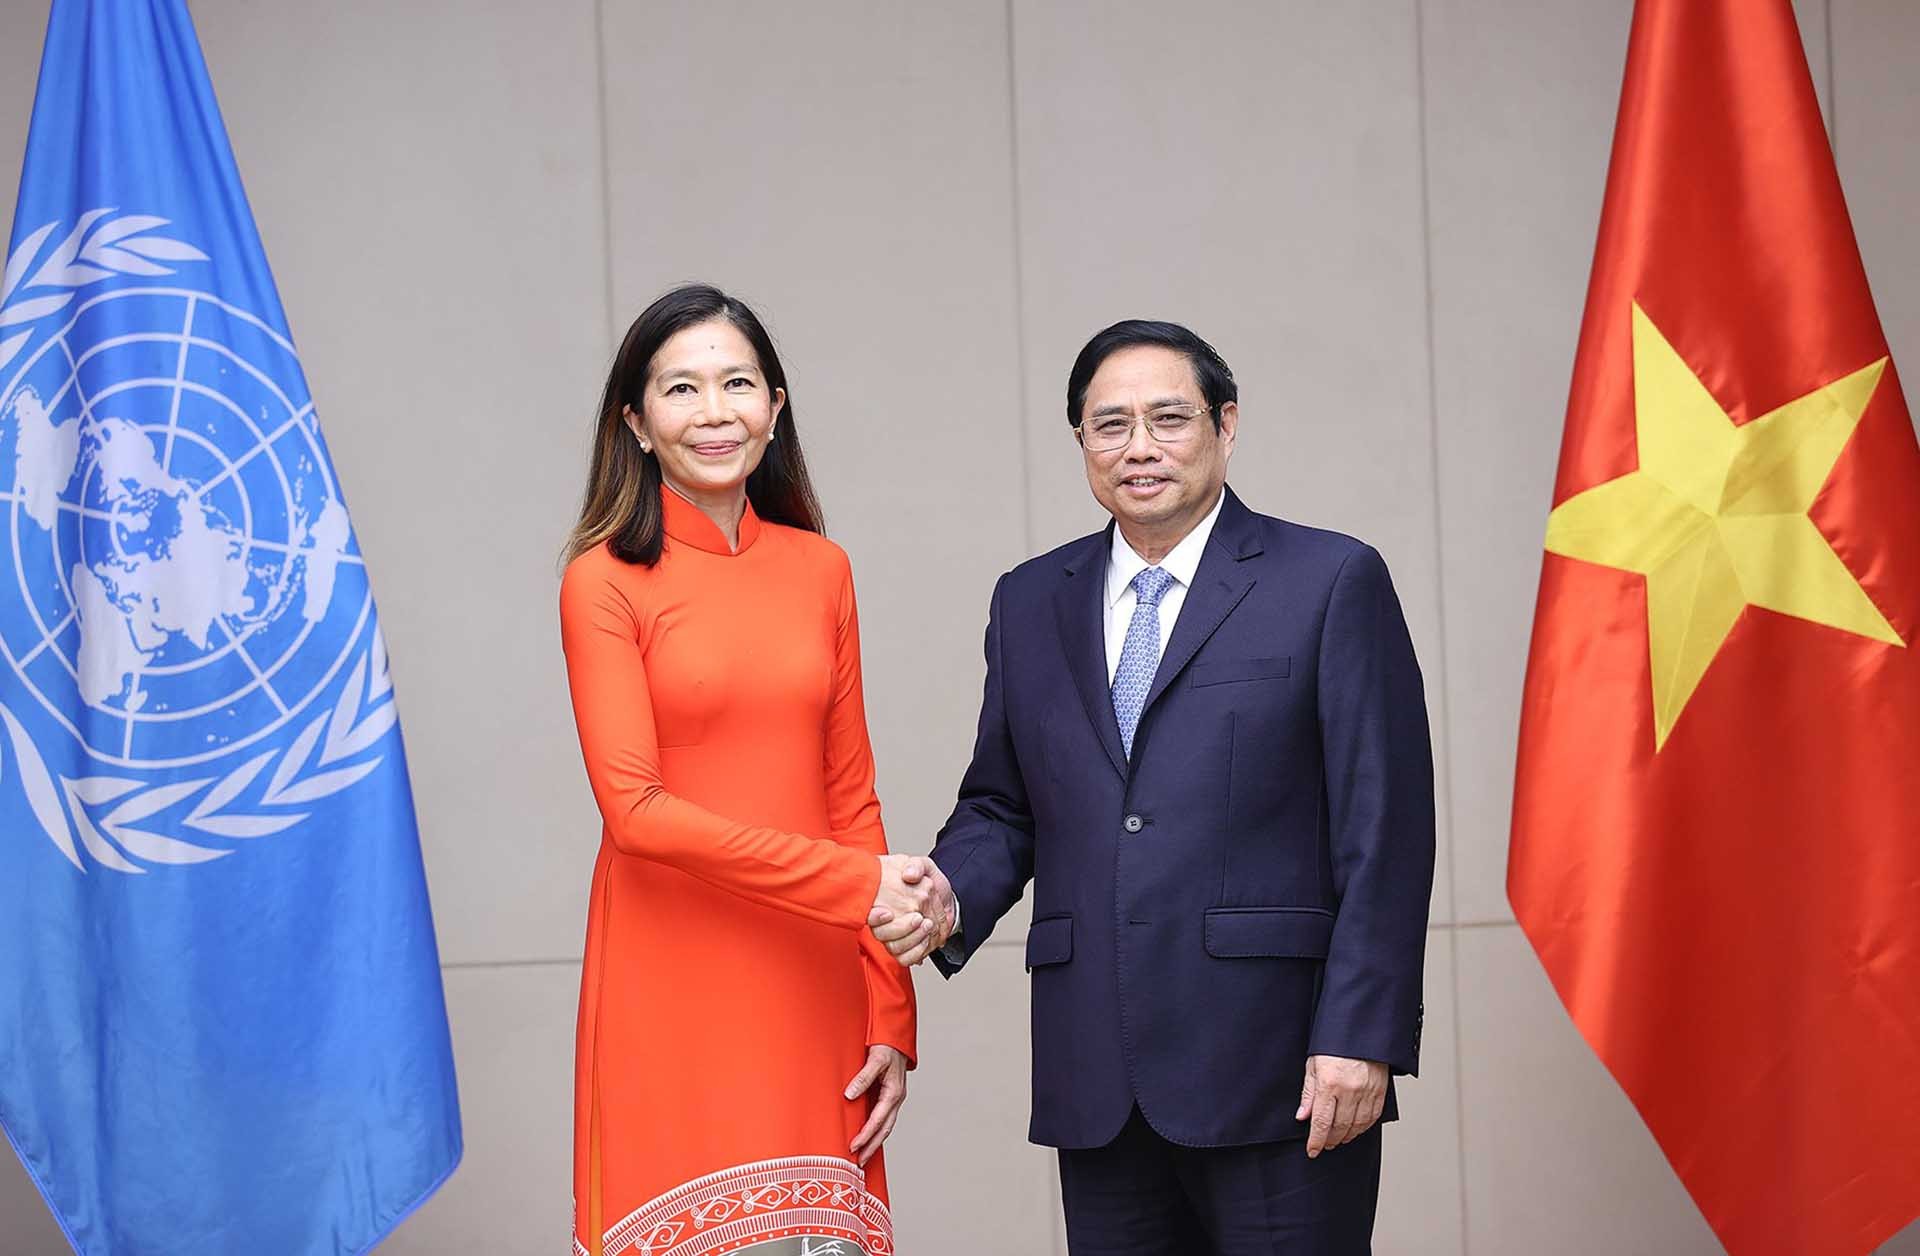 Thủ tướng Phạm Minh Chính tiếp bà Pauline Tamesis, Điều phối viên thường trú Liên hợp quốc.